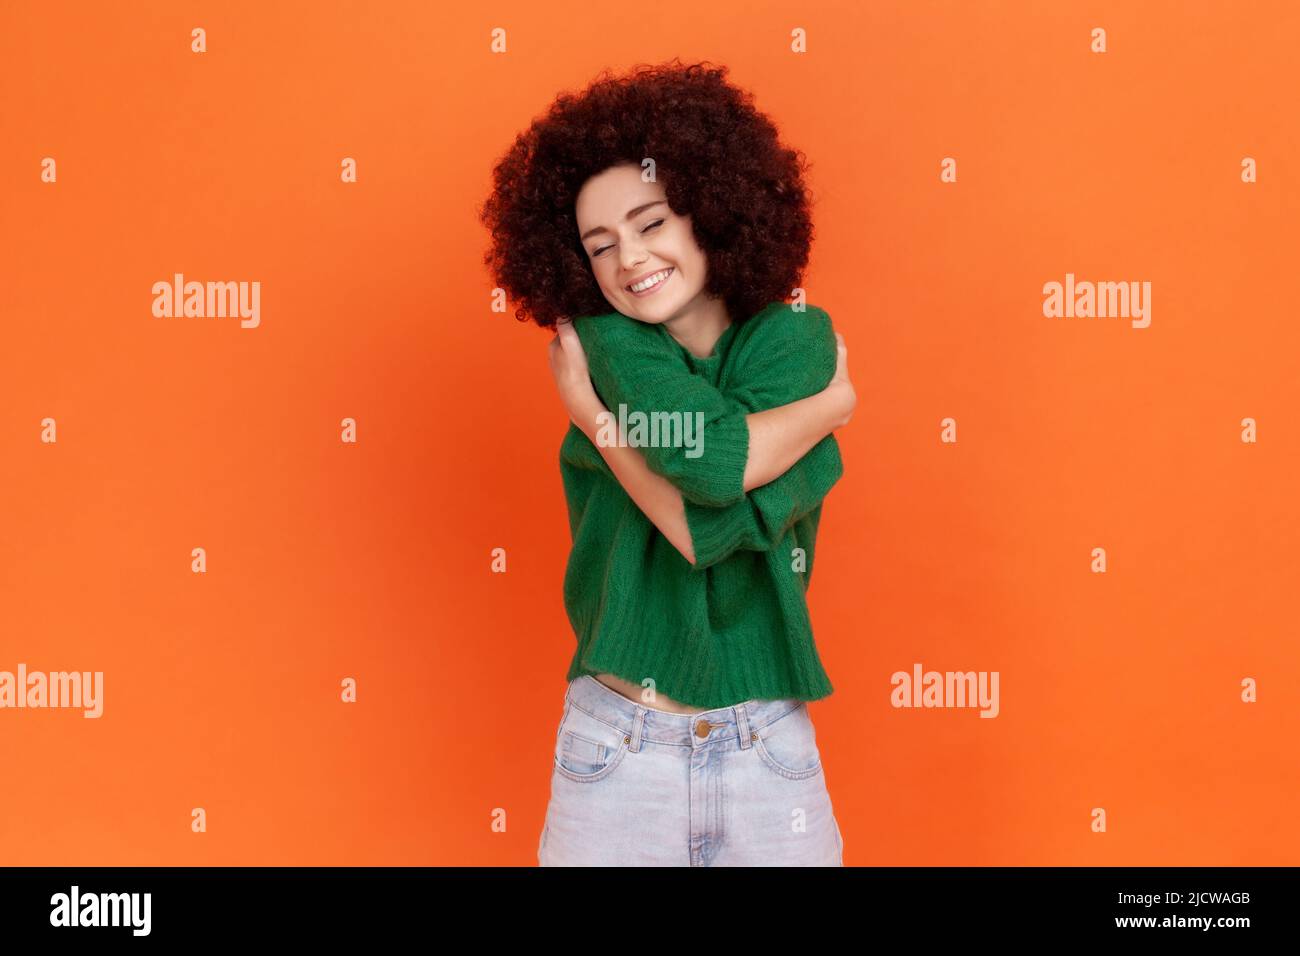 Femme à la coiffure afro portant un pull vert décontracté se embrassant et souriant, se sentant à l'aise et accomplie, narcissique personne égoïste. Studio d'intérieur isolé sur fond orange. Banque D'Images